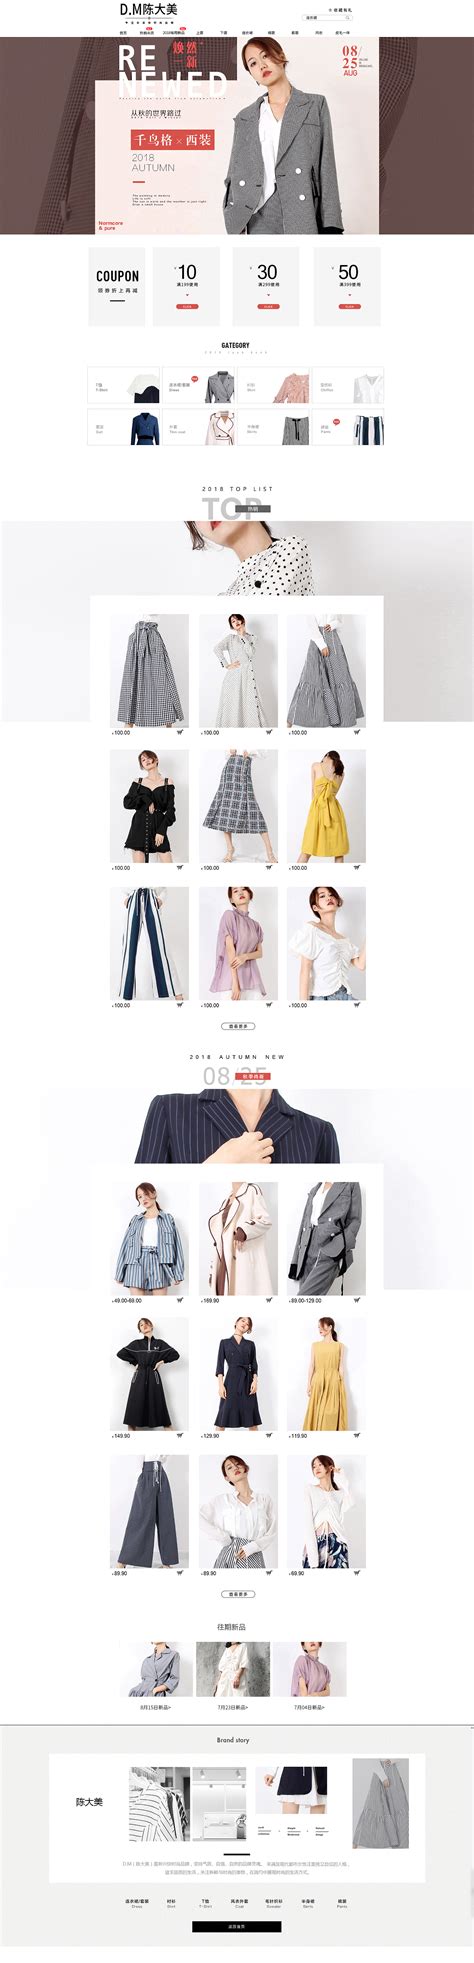 女性品牌服装促销广告主题图形psd韩国素材 – 设计小咖